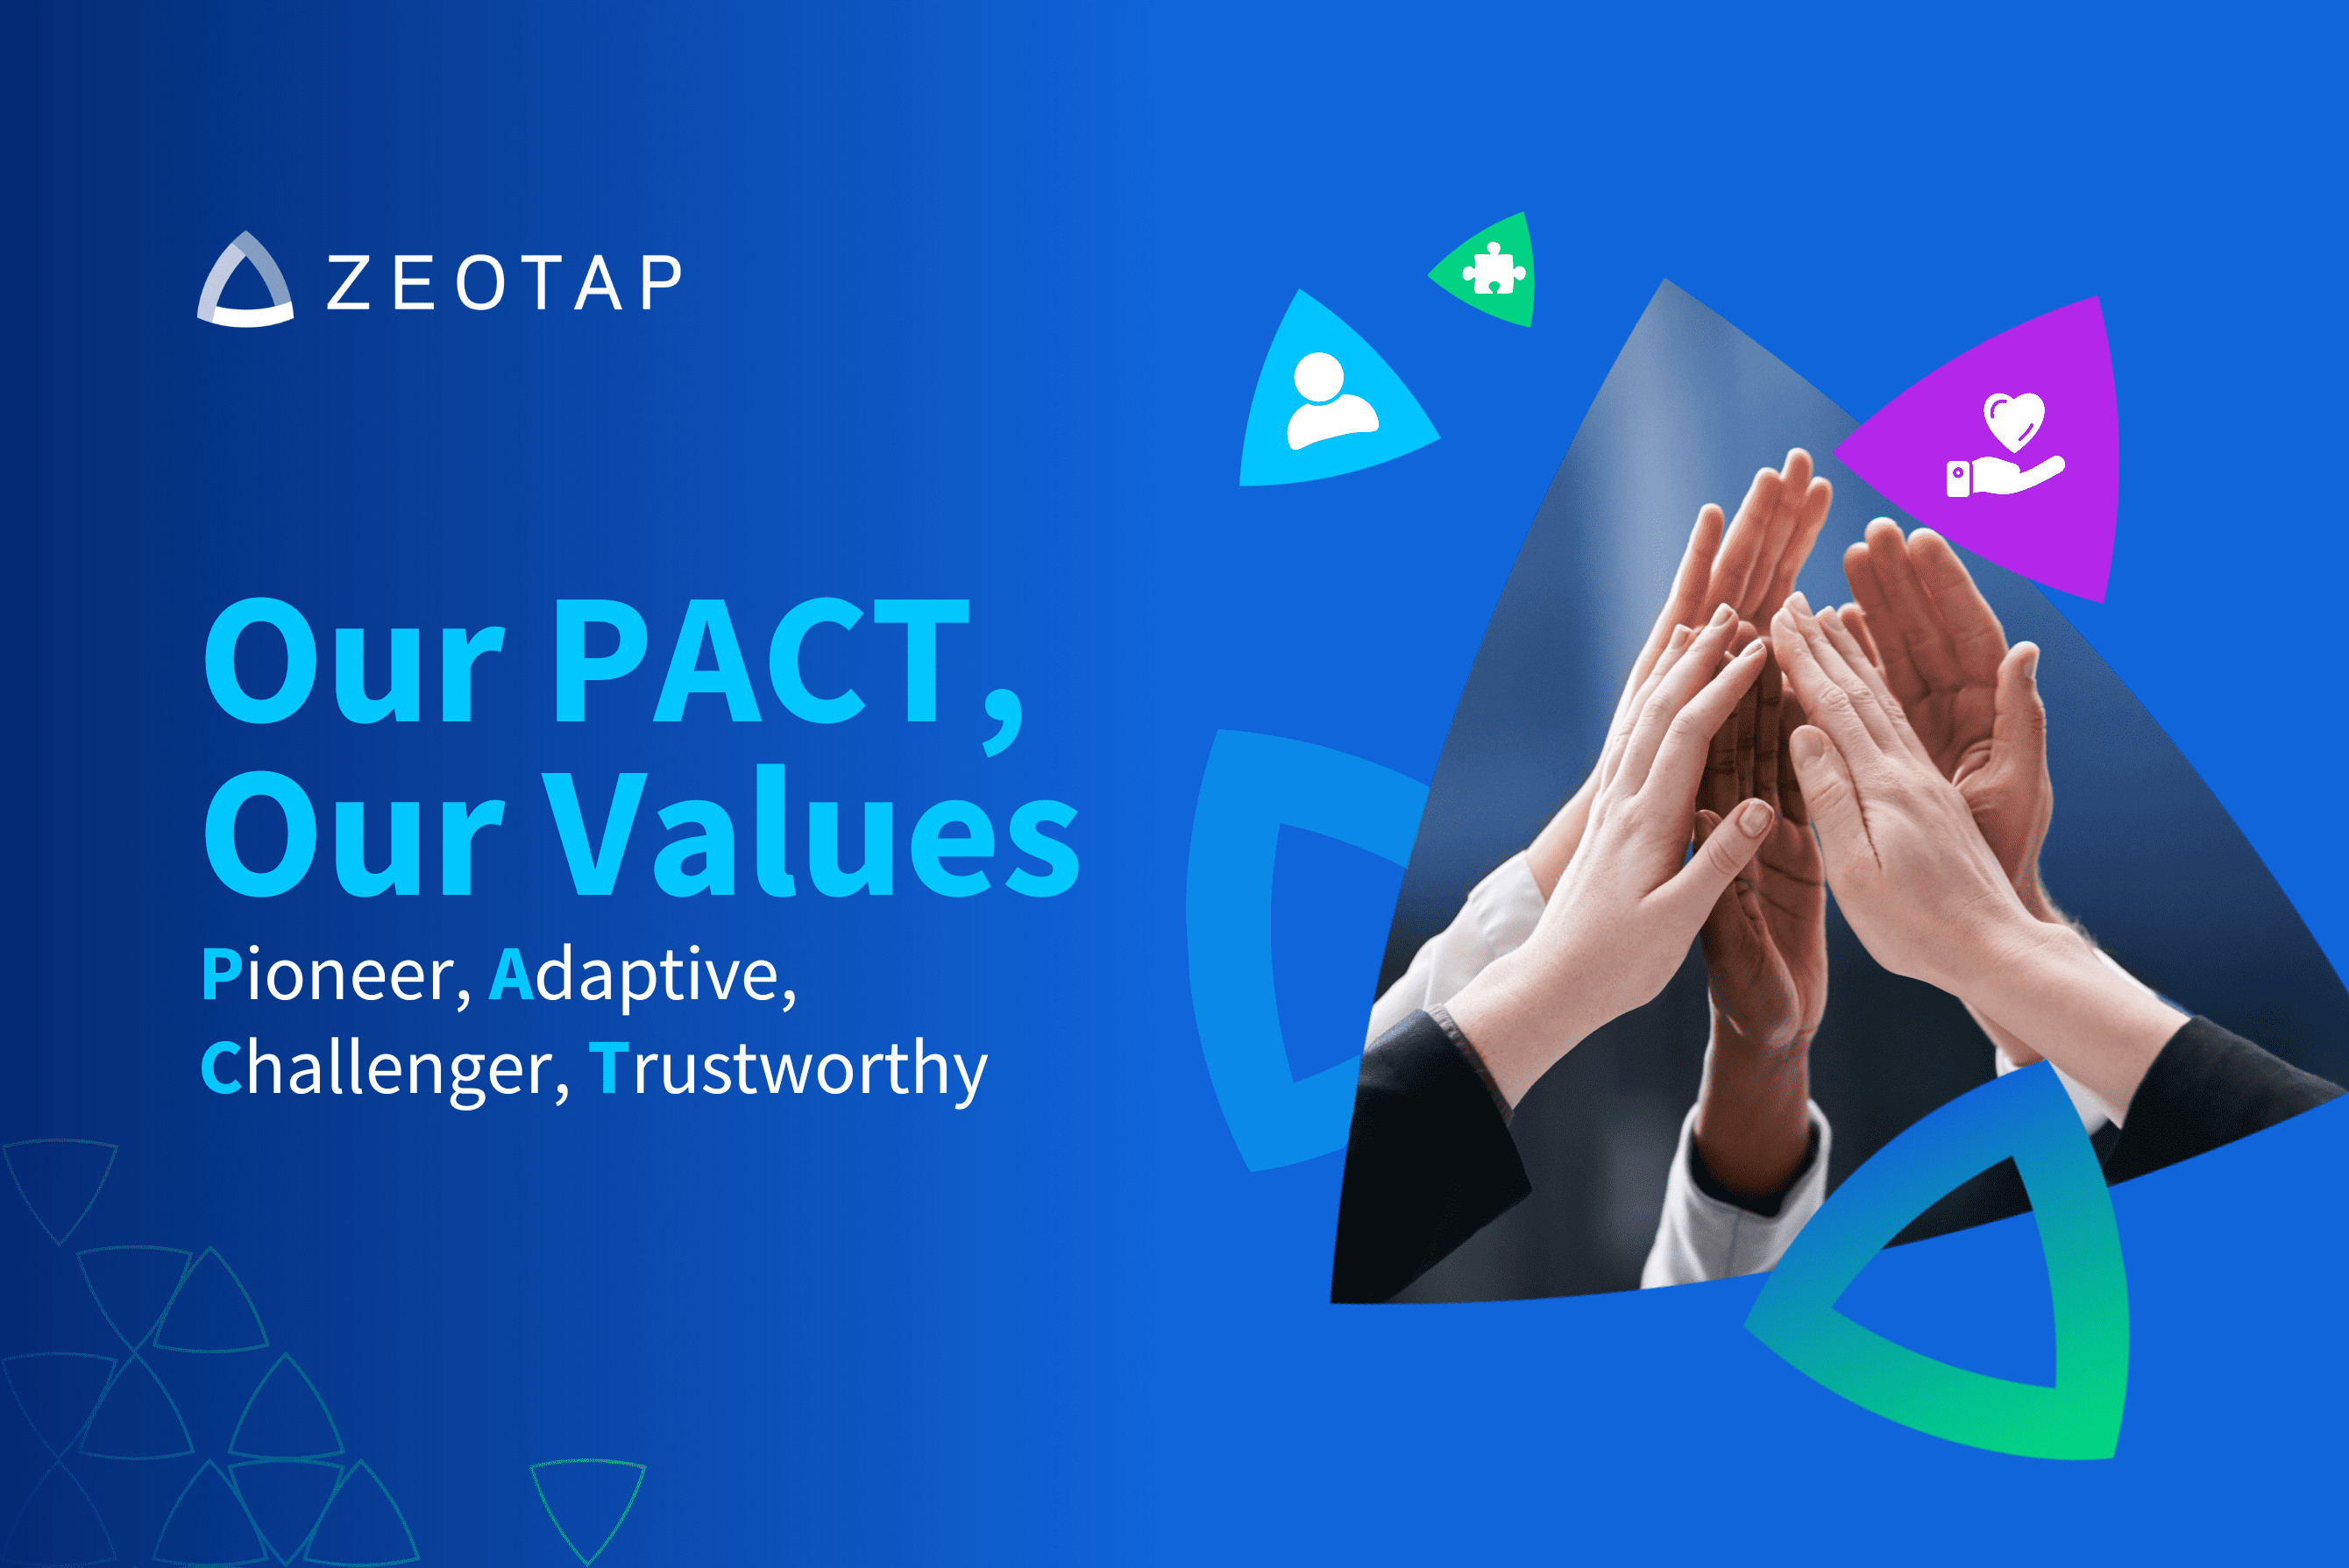 Zeotap company values